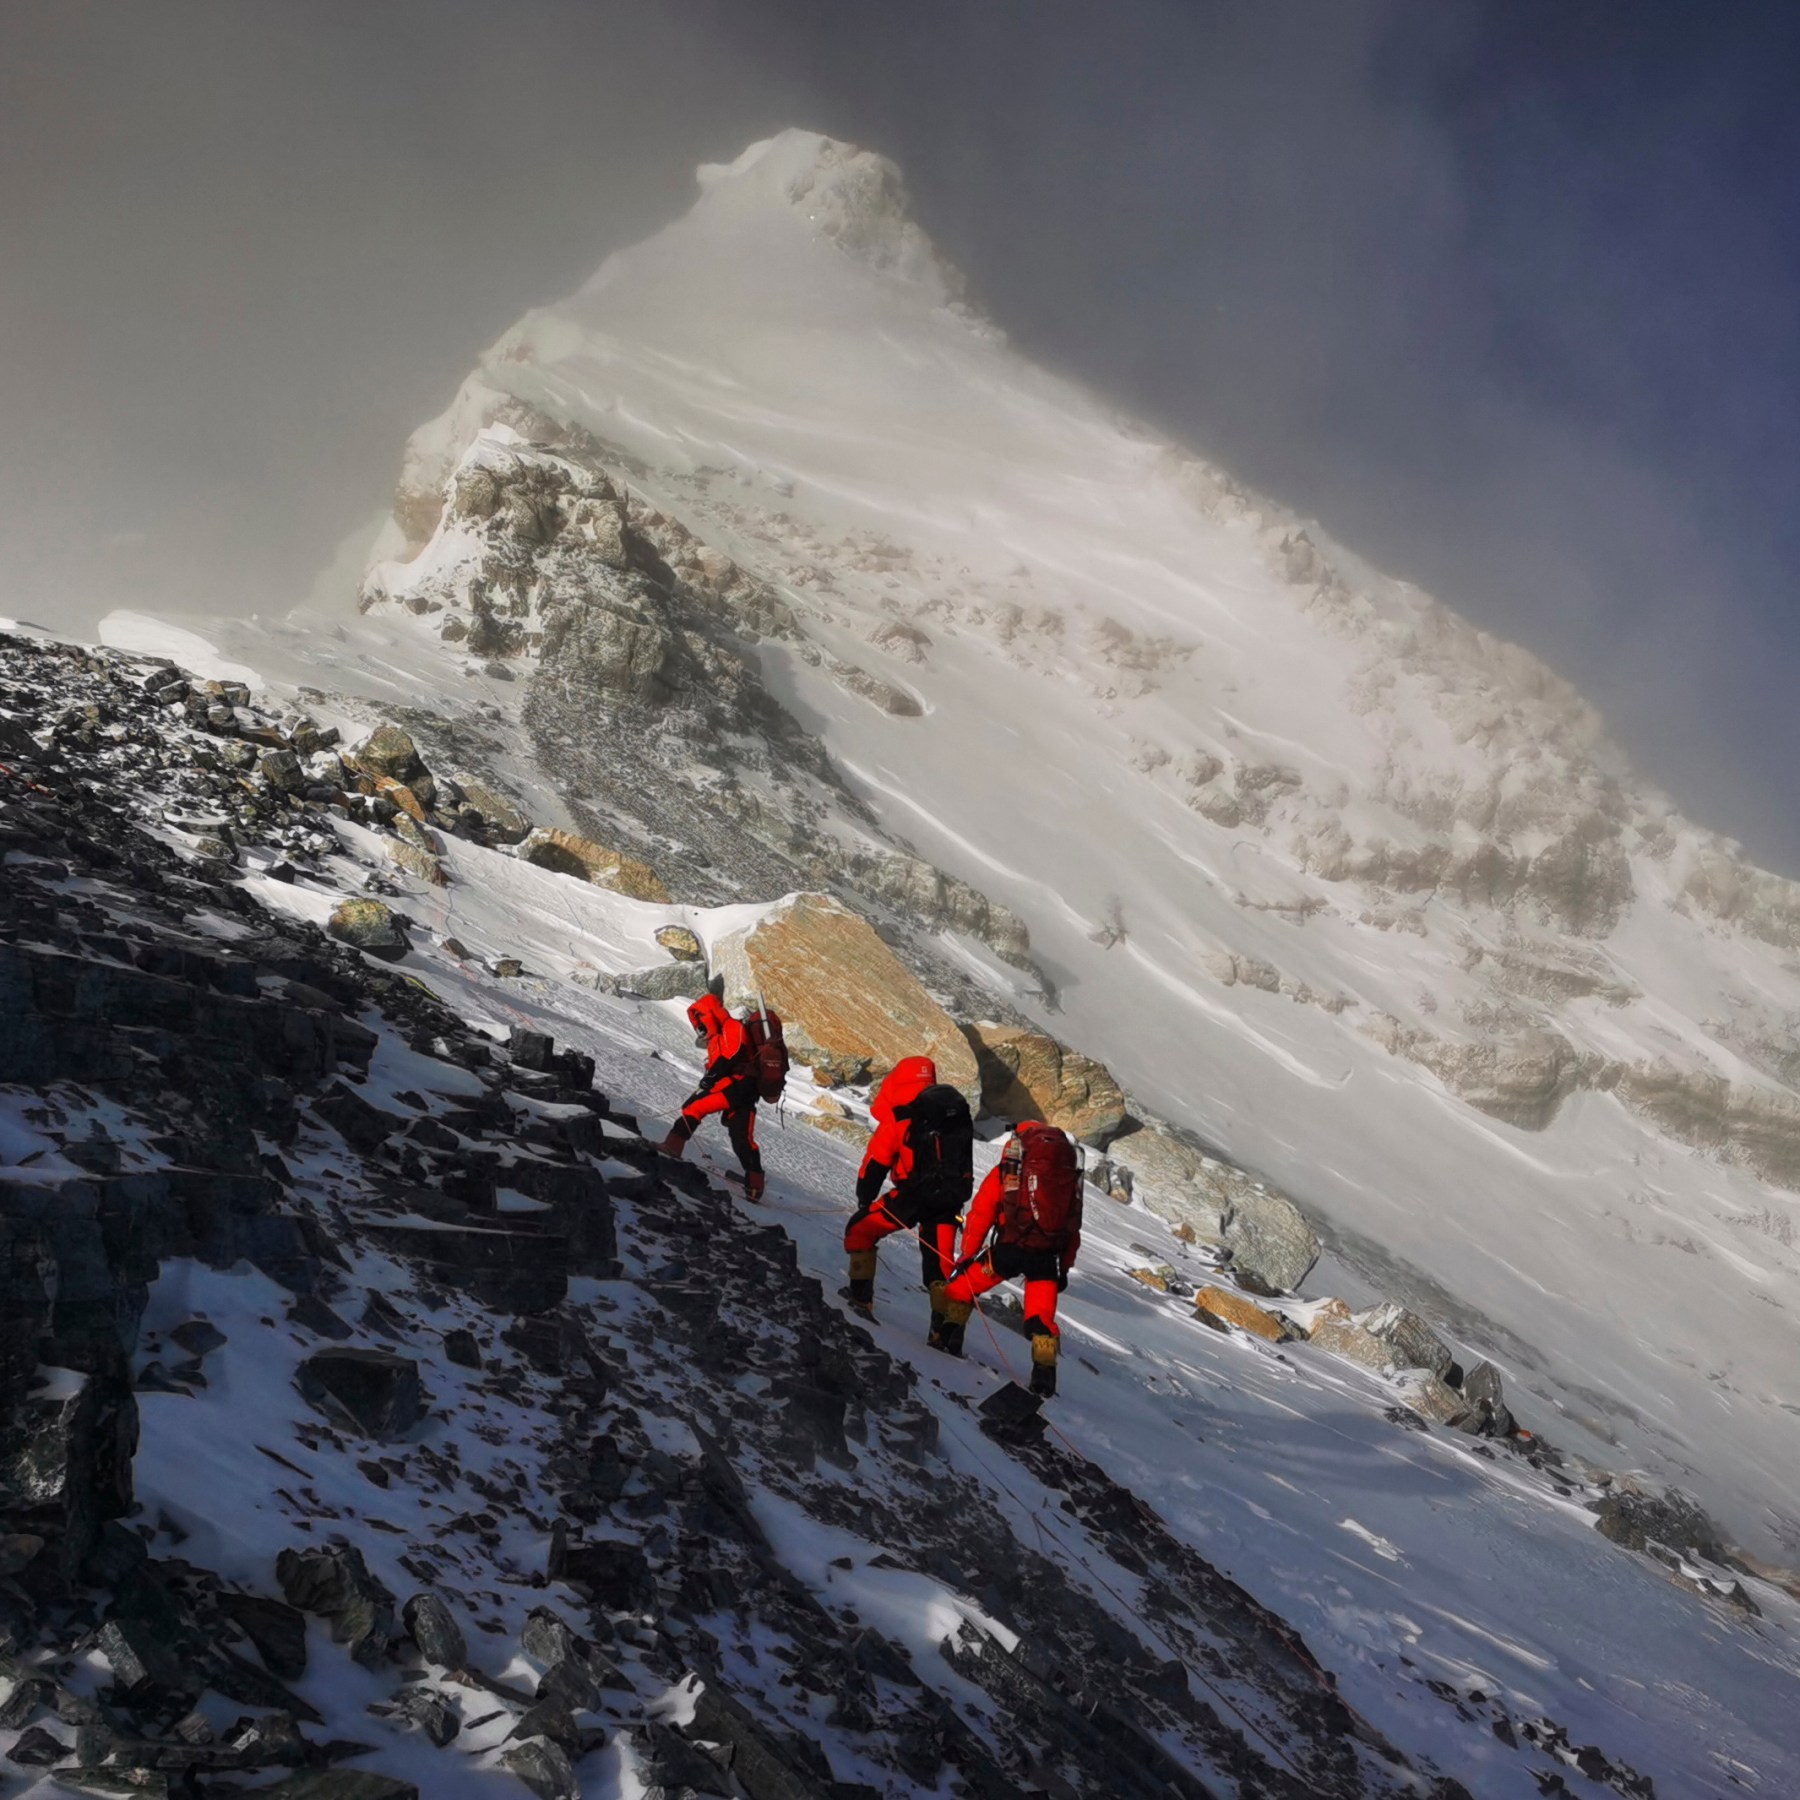 Voorwaarde Dag Zus Mt Everest: Nepal, China announce revised height at 8,849 metres | News |  Al Jazeera